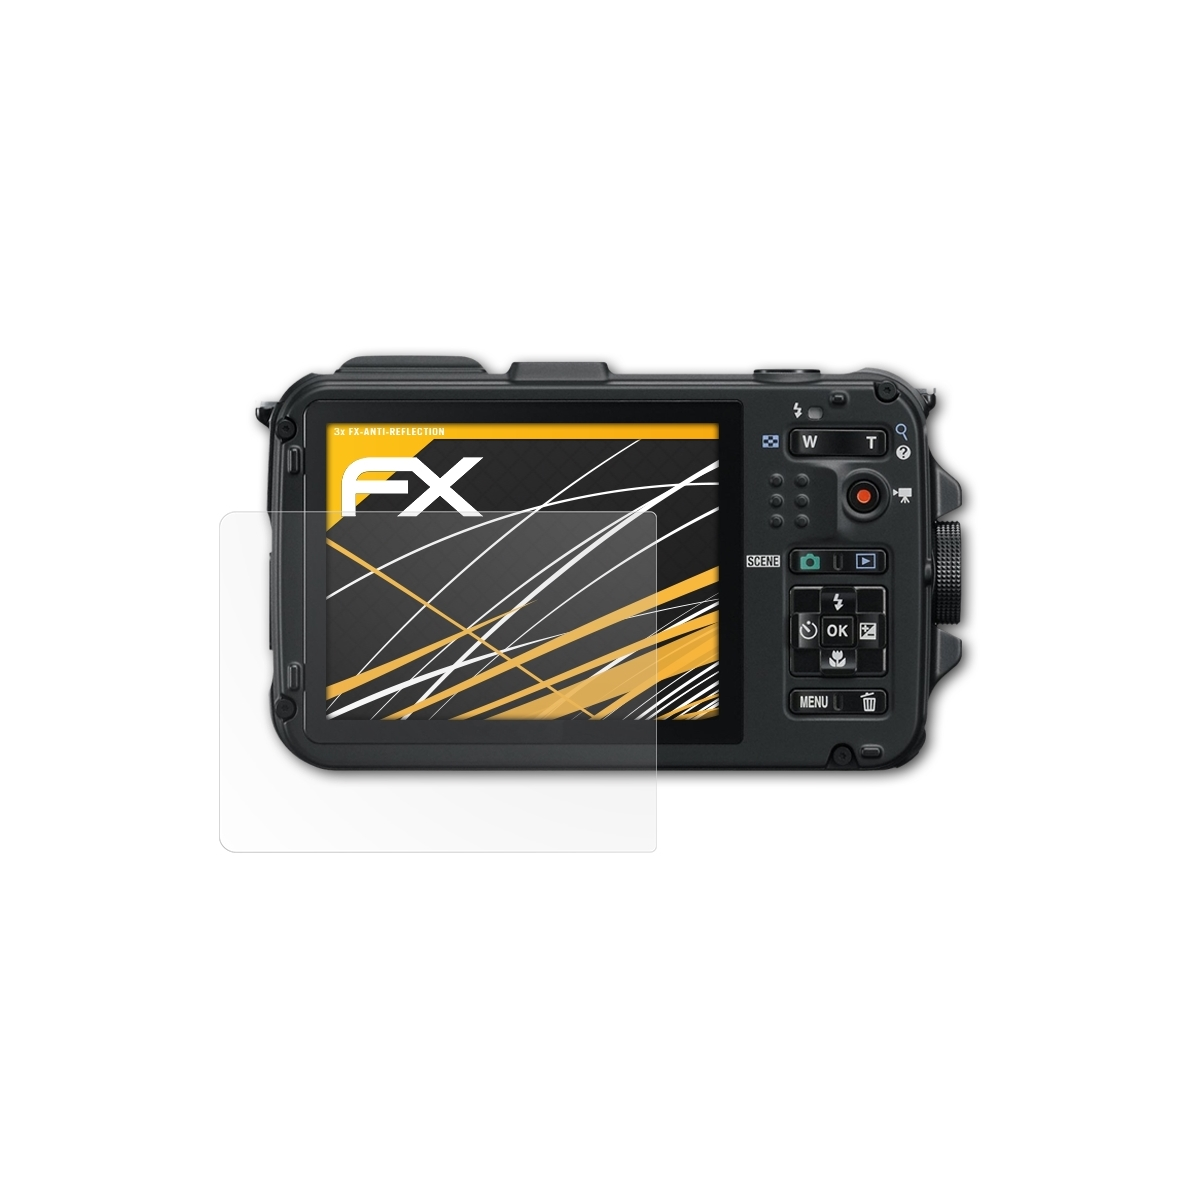 Coolpix 3x ATFOLIX Displayschutz(für AW100) FX-Antireflex Nikon